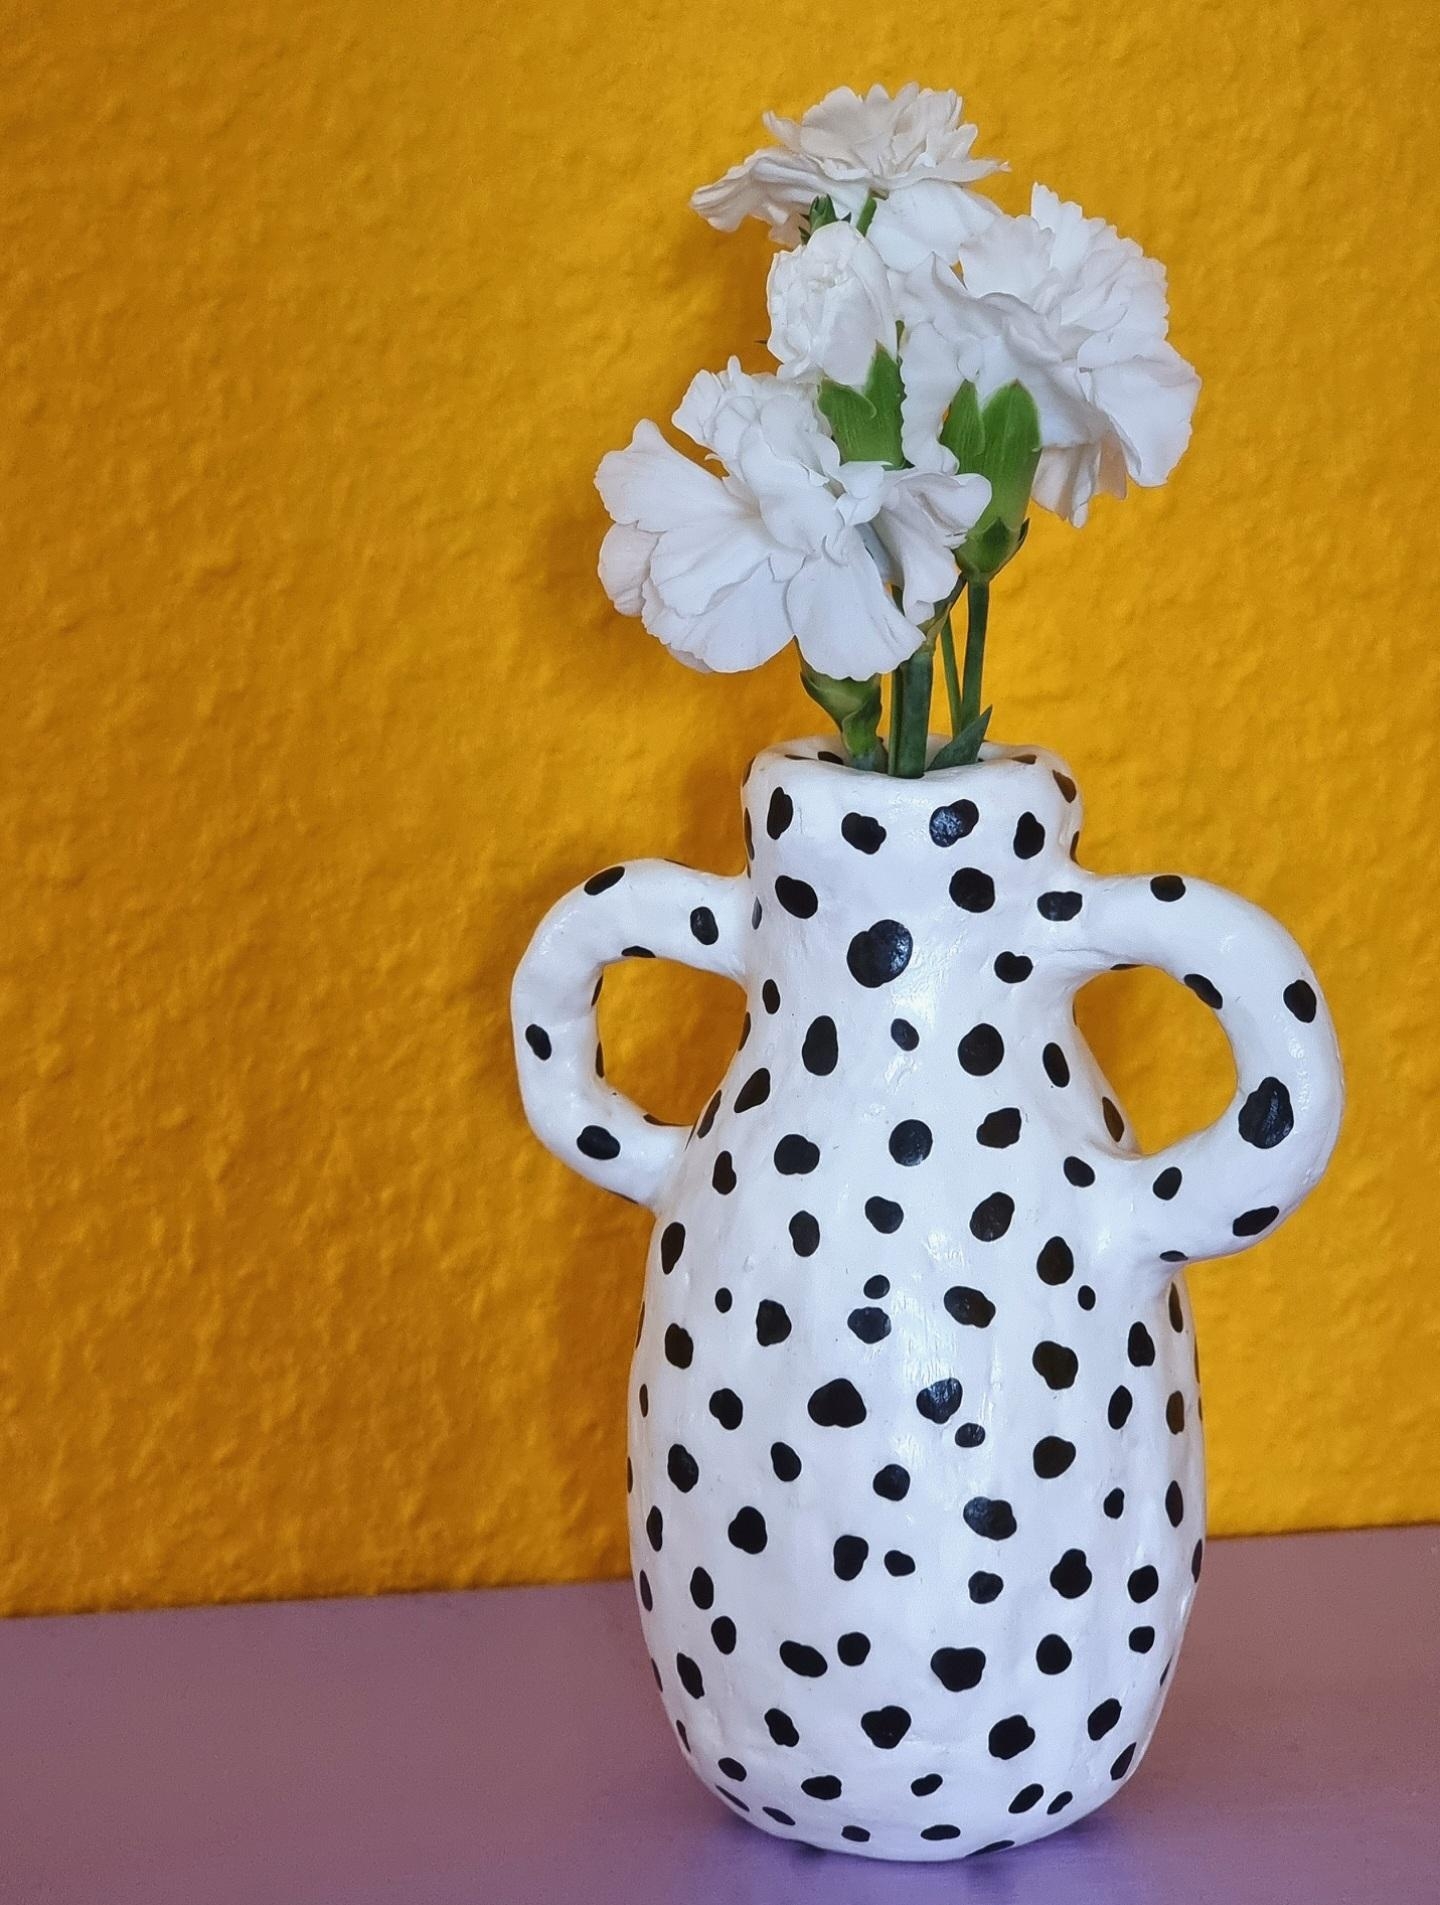 Auf ins #wochenende ✌️ mit #blumen in der #diy #vase auf der #midcentury #kommode #freshflowerfriday #frühling #deko 
